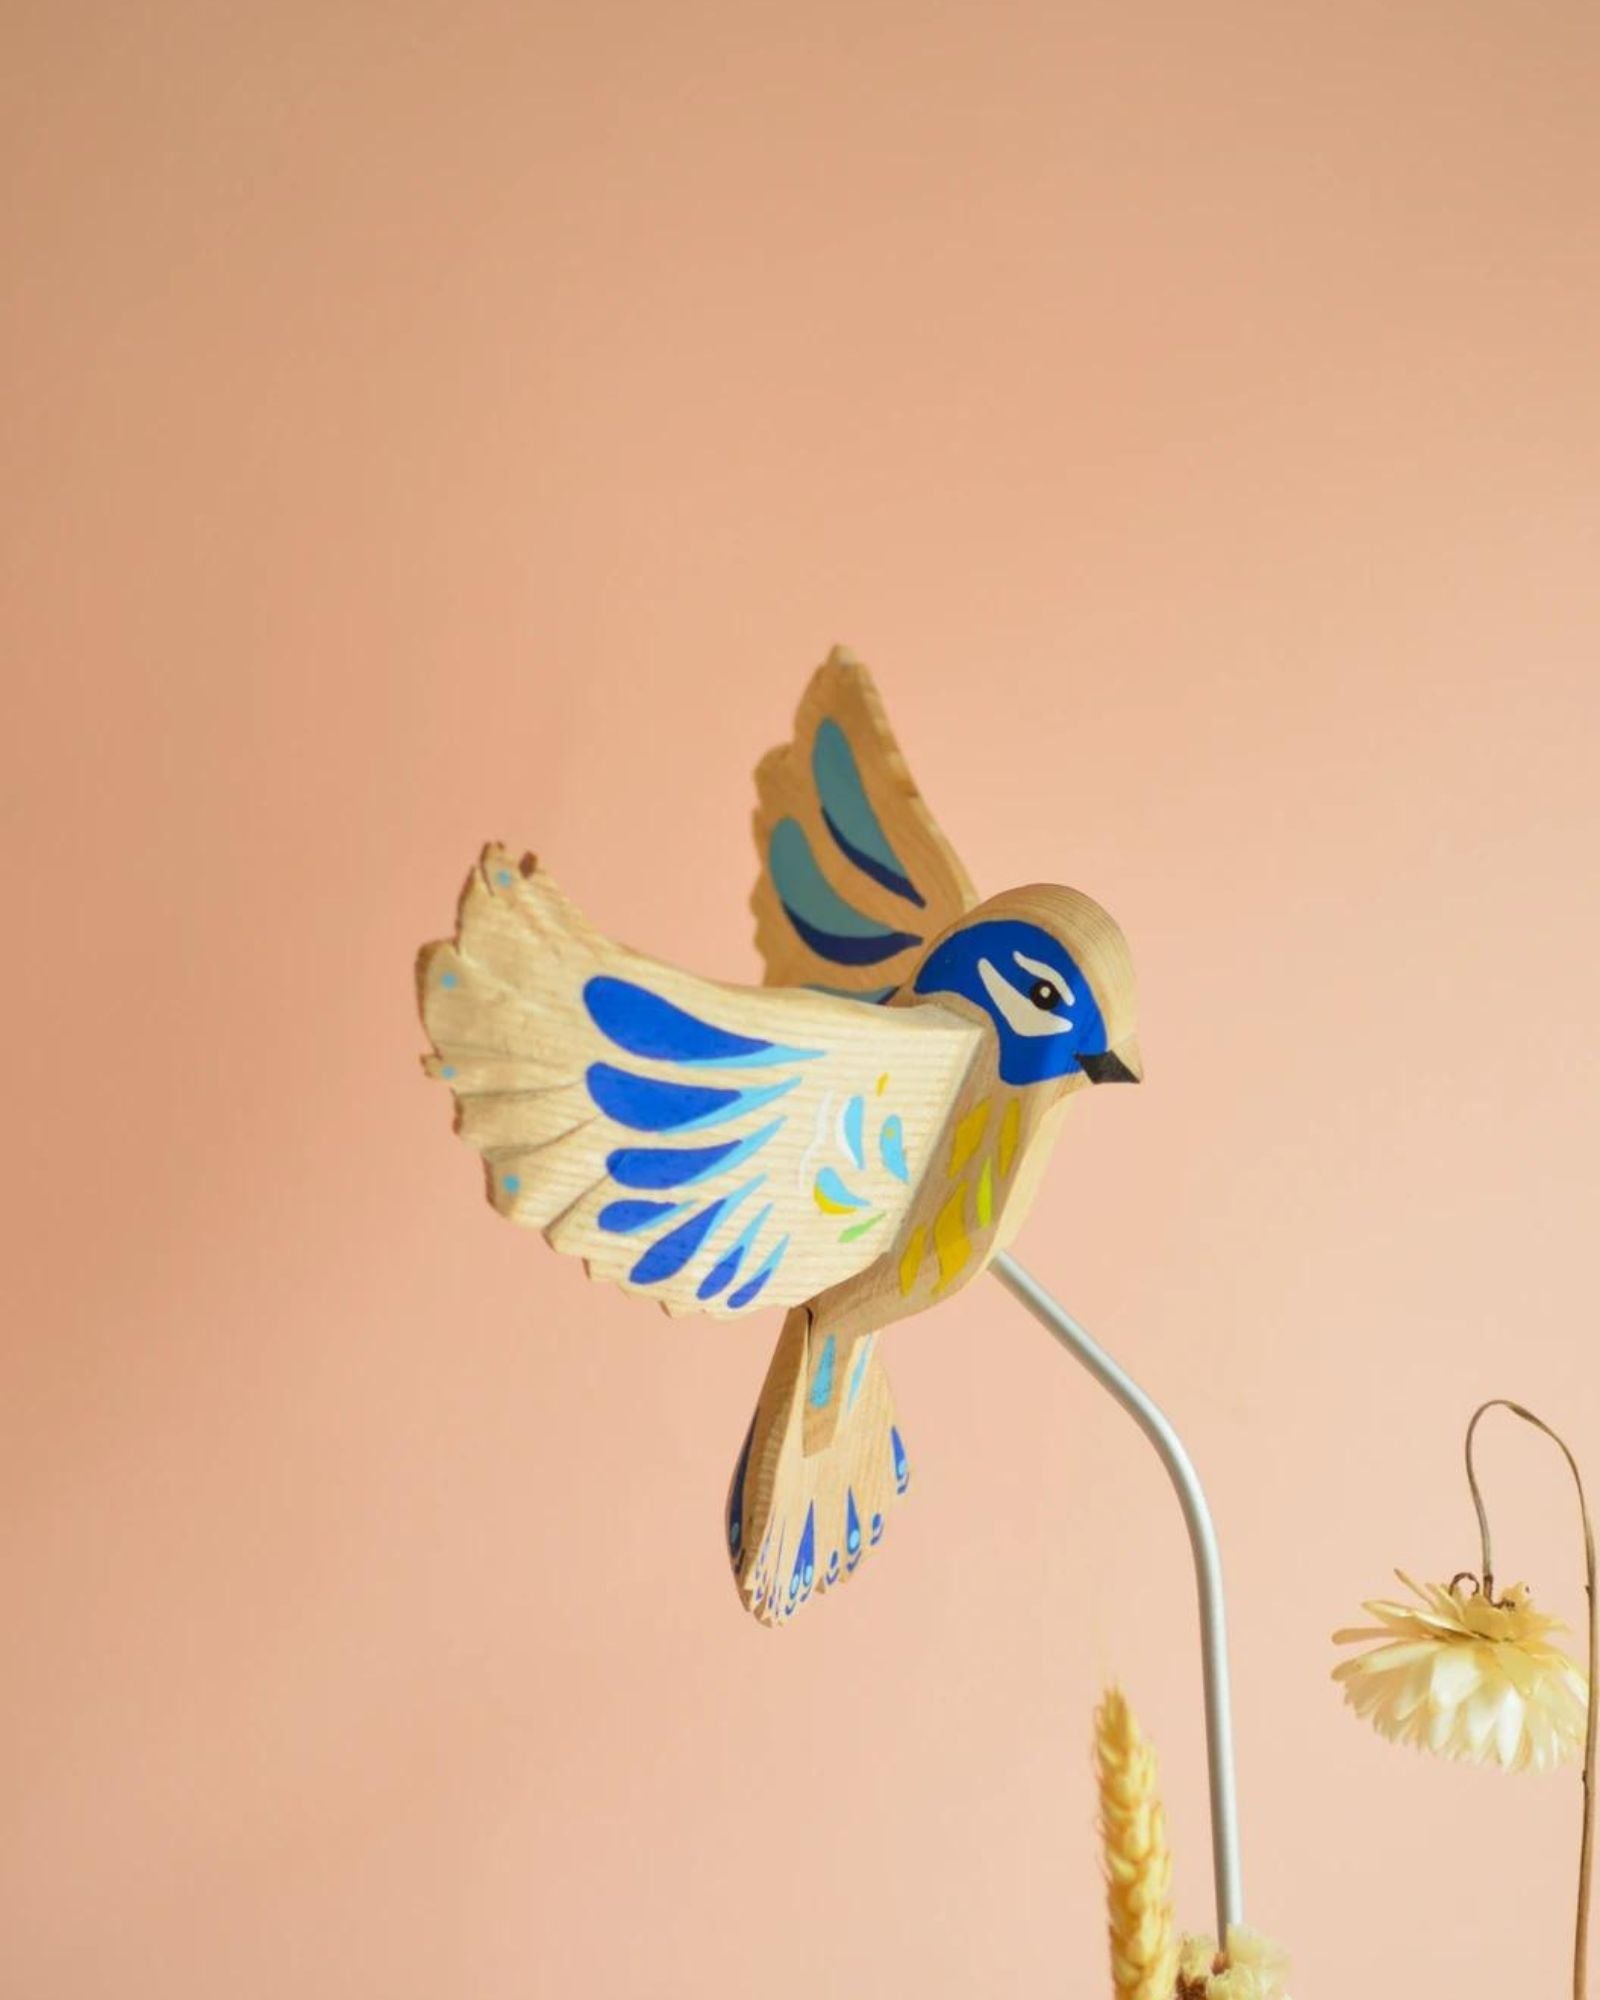 La Petite Hirondelle - Blue Tit Bird Sculpture